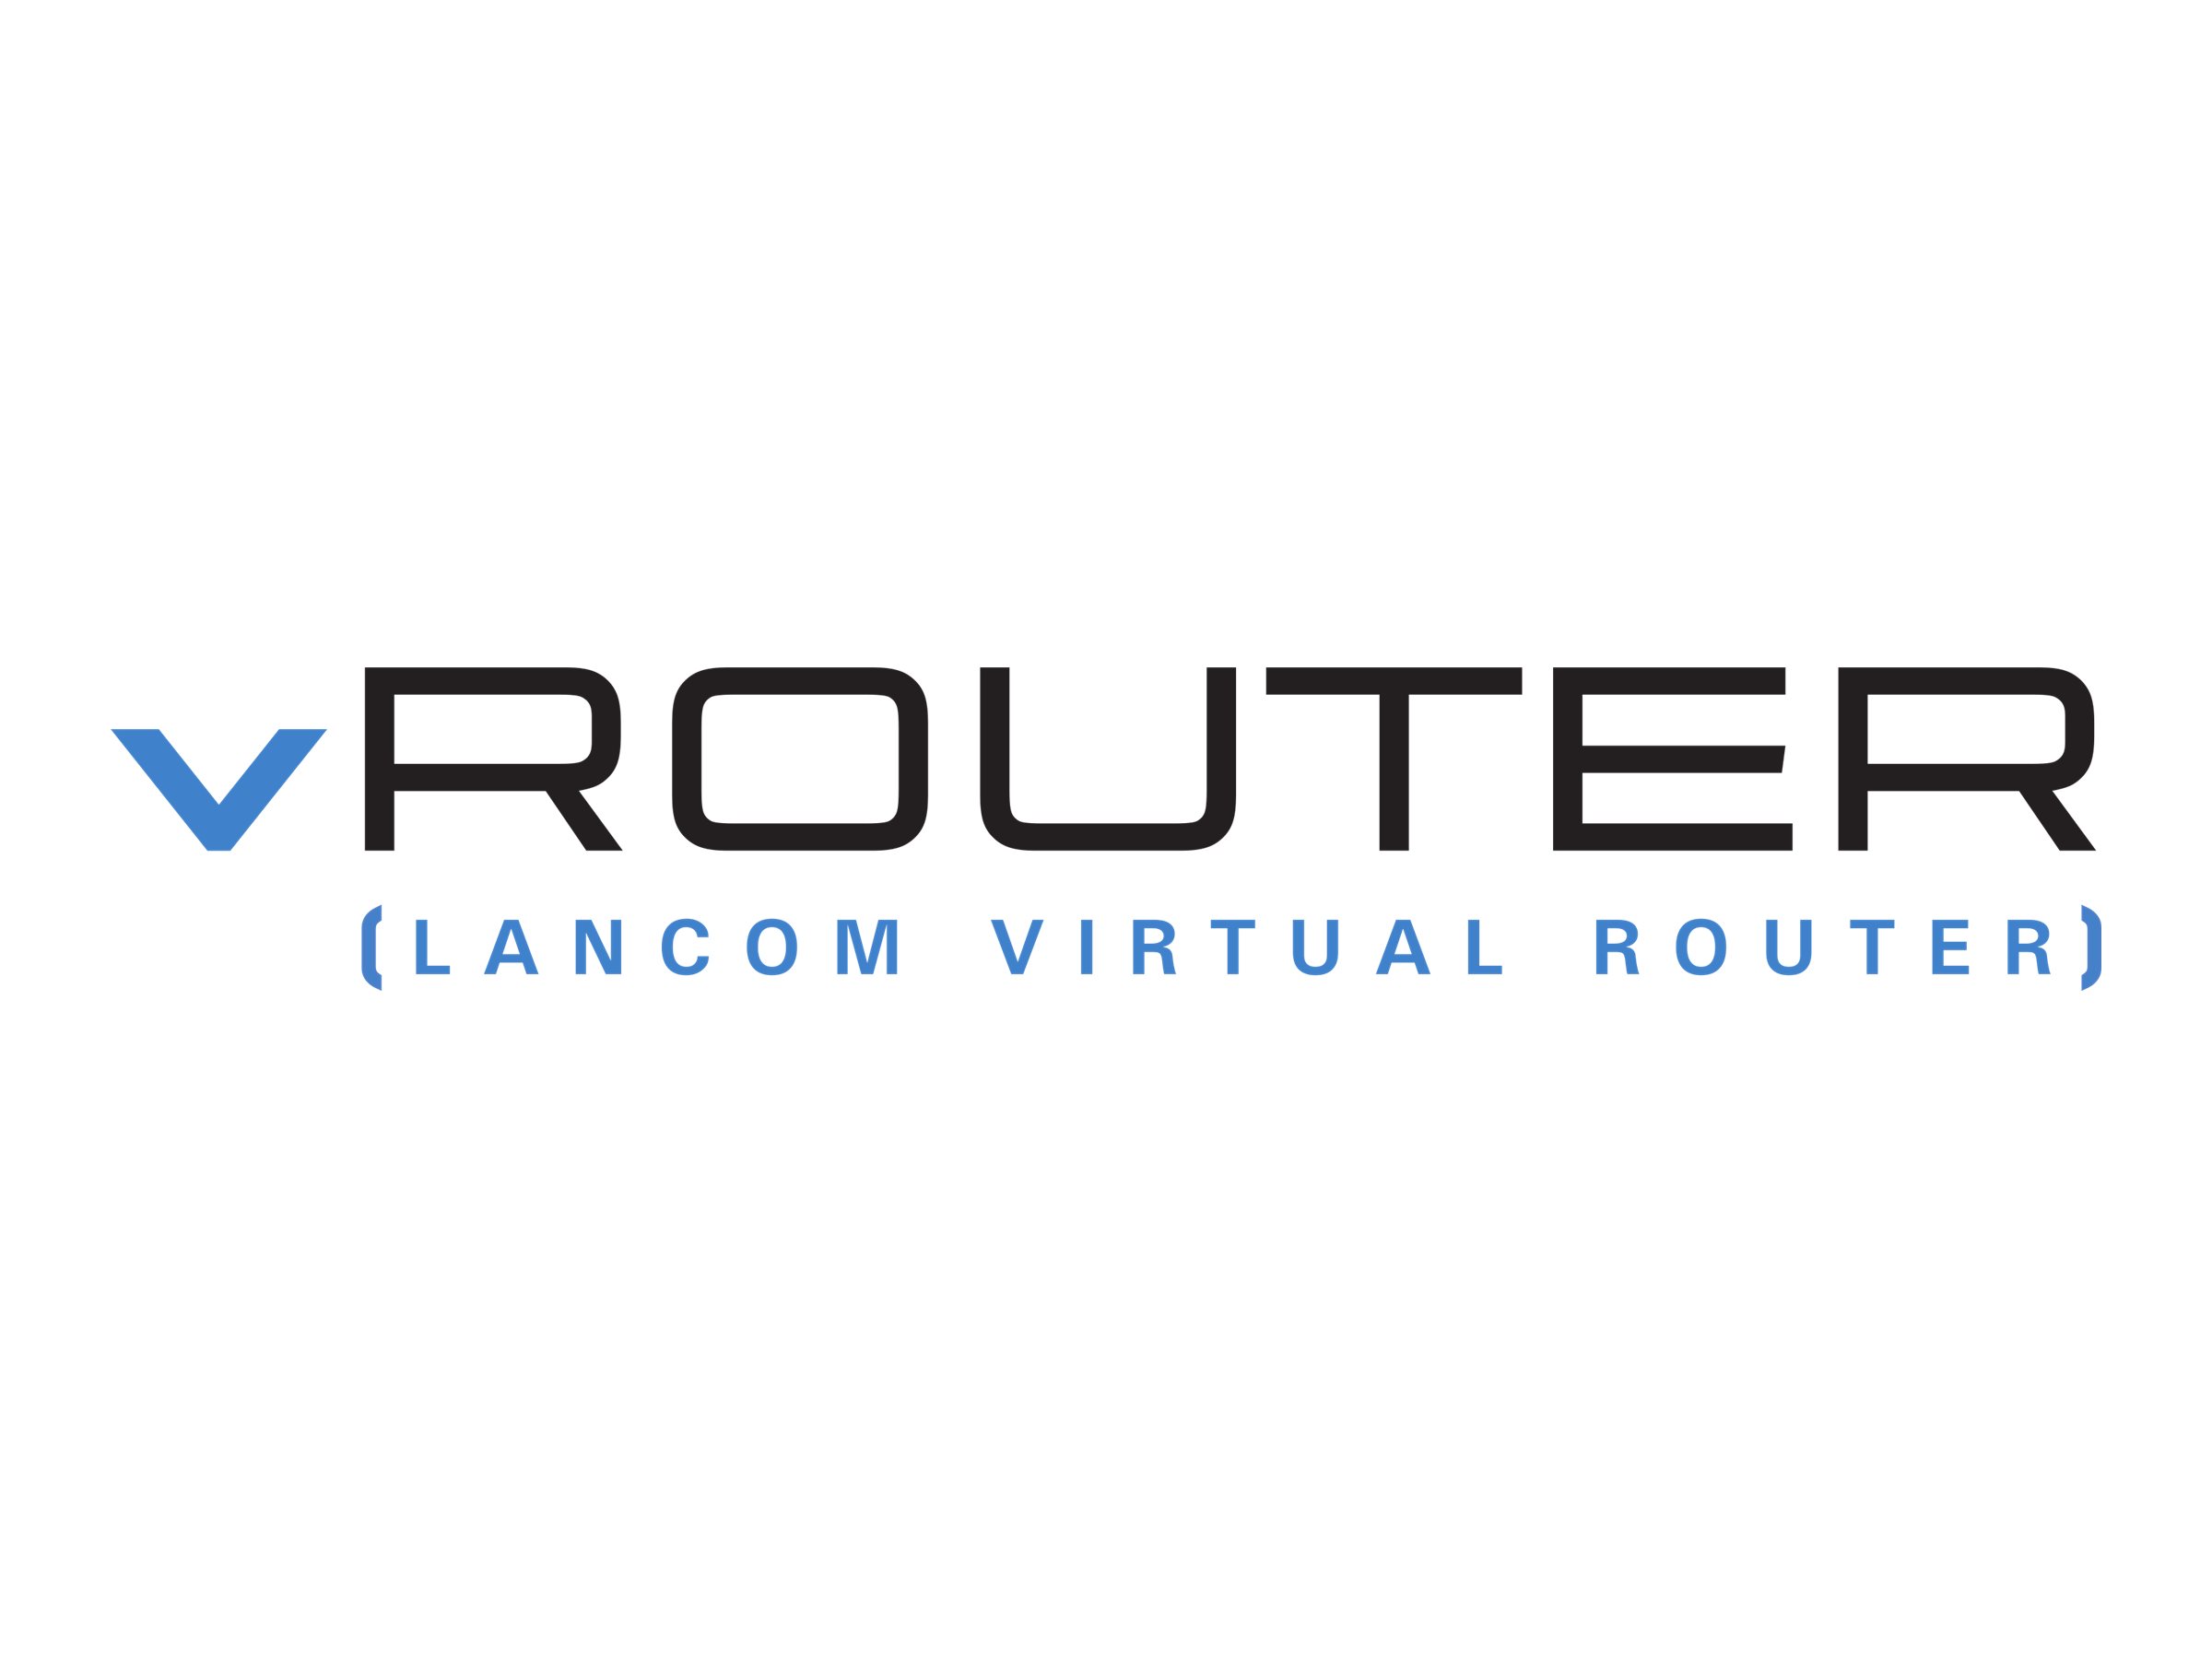 LANCOM vRouter for VMware ESXi - Abonnement-Lizenz (1 Jahr) - unbegrenzter Durchsatz, 256 ARF Netzwerke